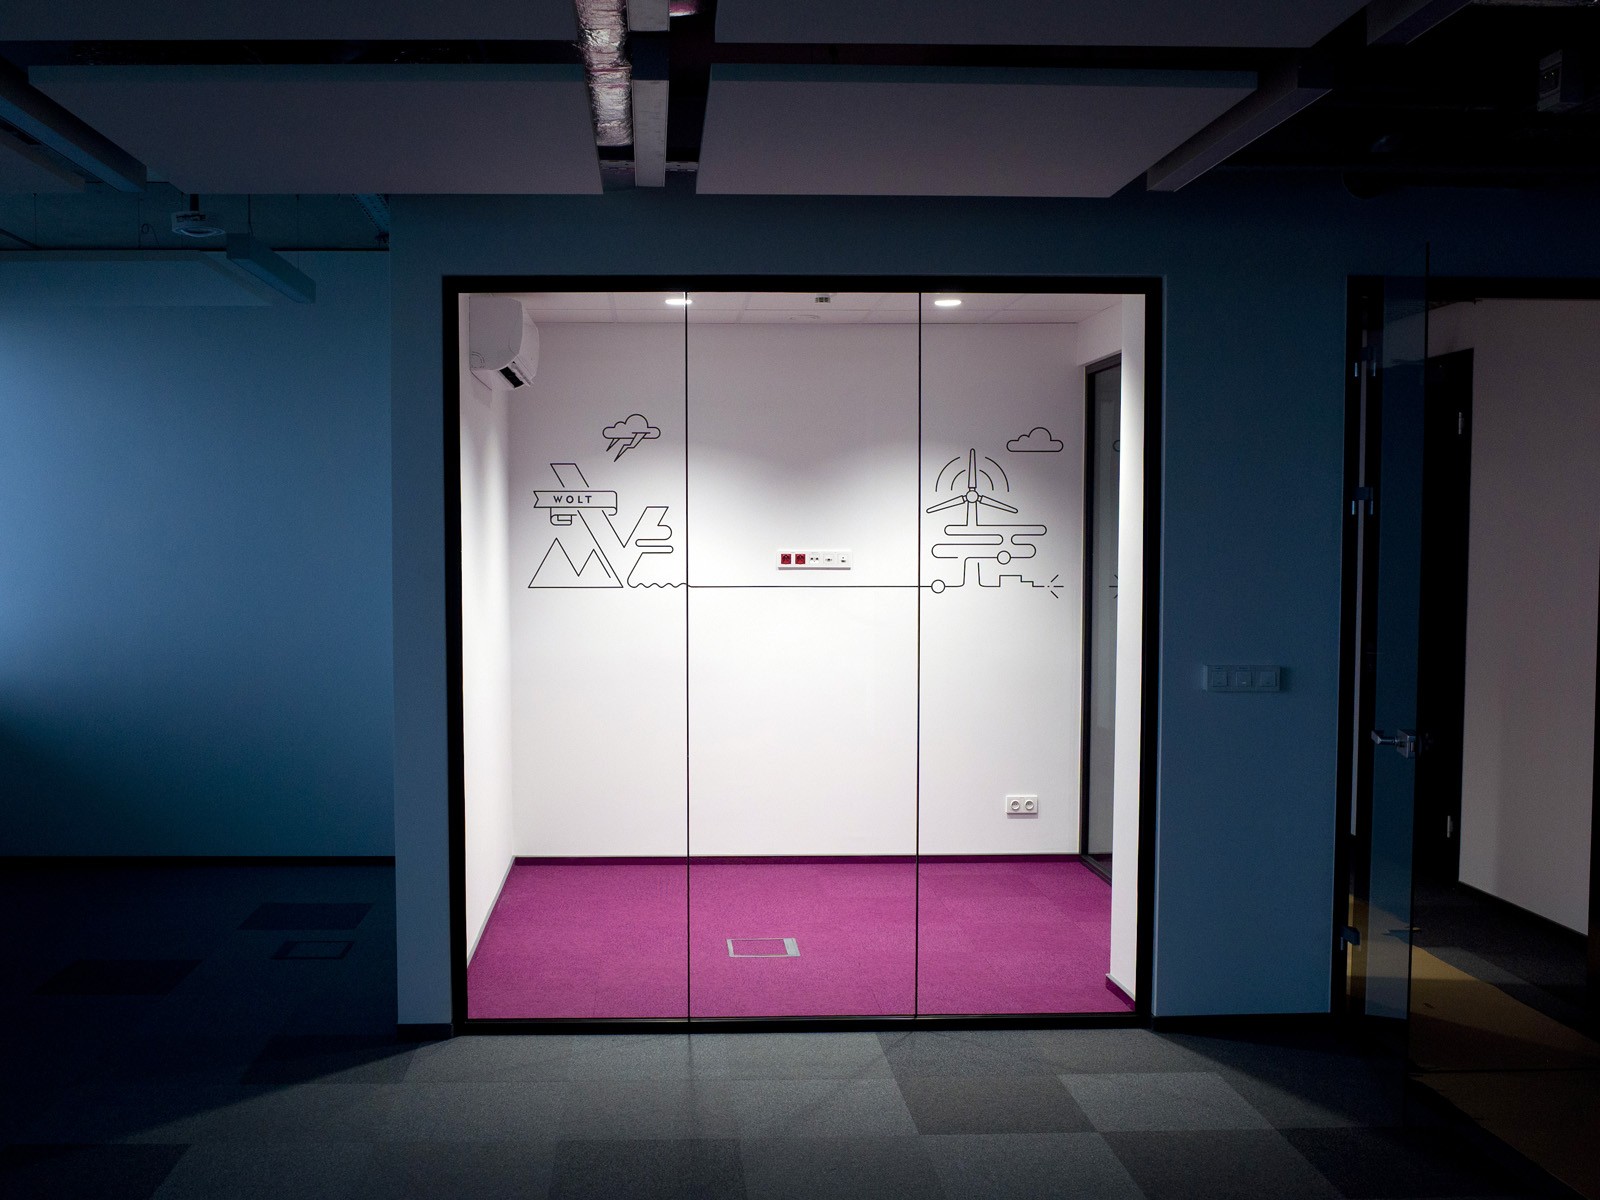 Grafika ścienna WOLT - siedziba firmy Fortum we Wrocławiu | wall design we wnętrzach biura | Portfolio